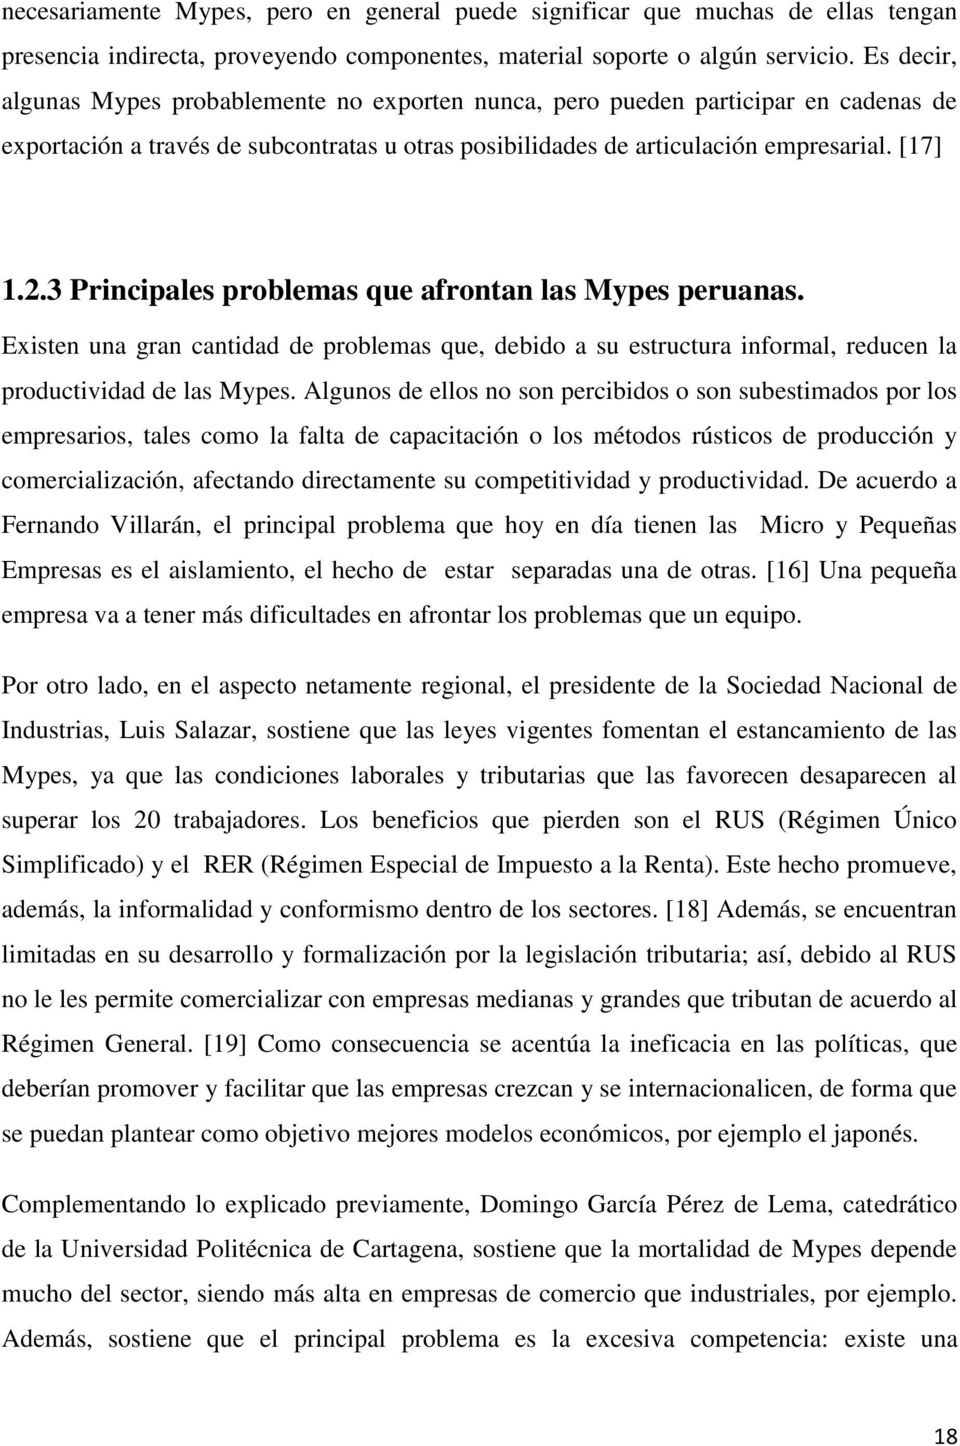 3 Principales problemas que afrontan las Mypes peruanas. Existen una gran cantidad de problemas que, debido a su estructura informal, reducen la productividad de las Mypes.